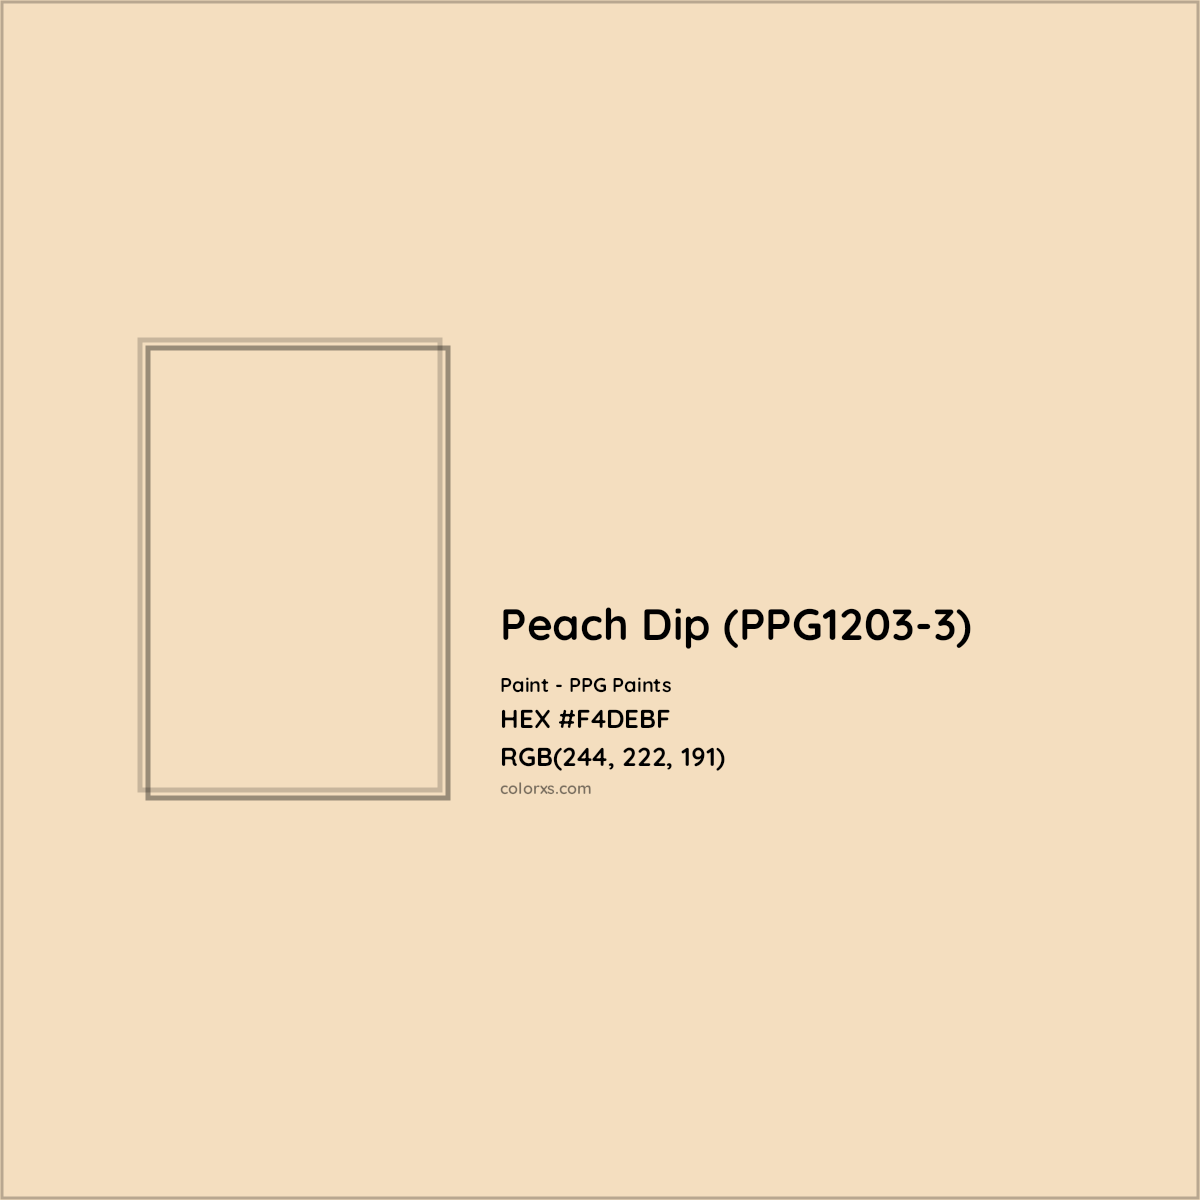 HEX #F4DEBF Peach Dip (PPG1203-3) Paint PPG Paints - Color Code